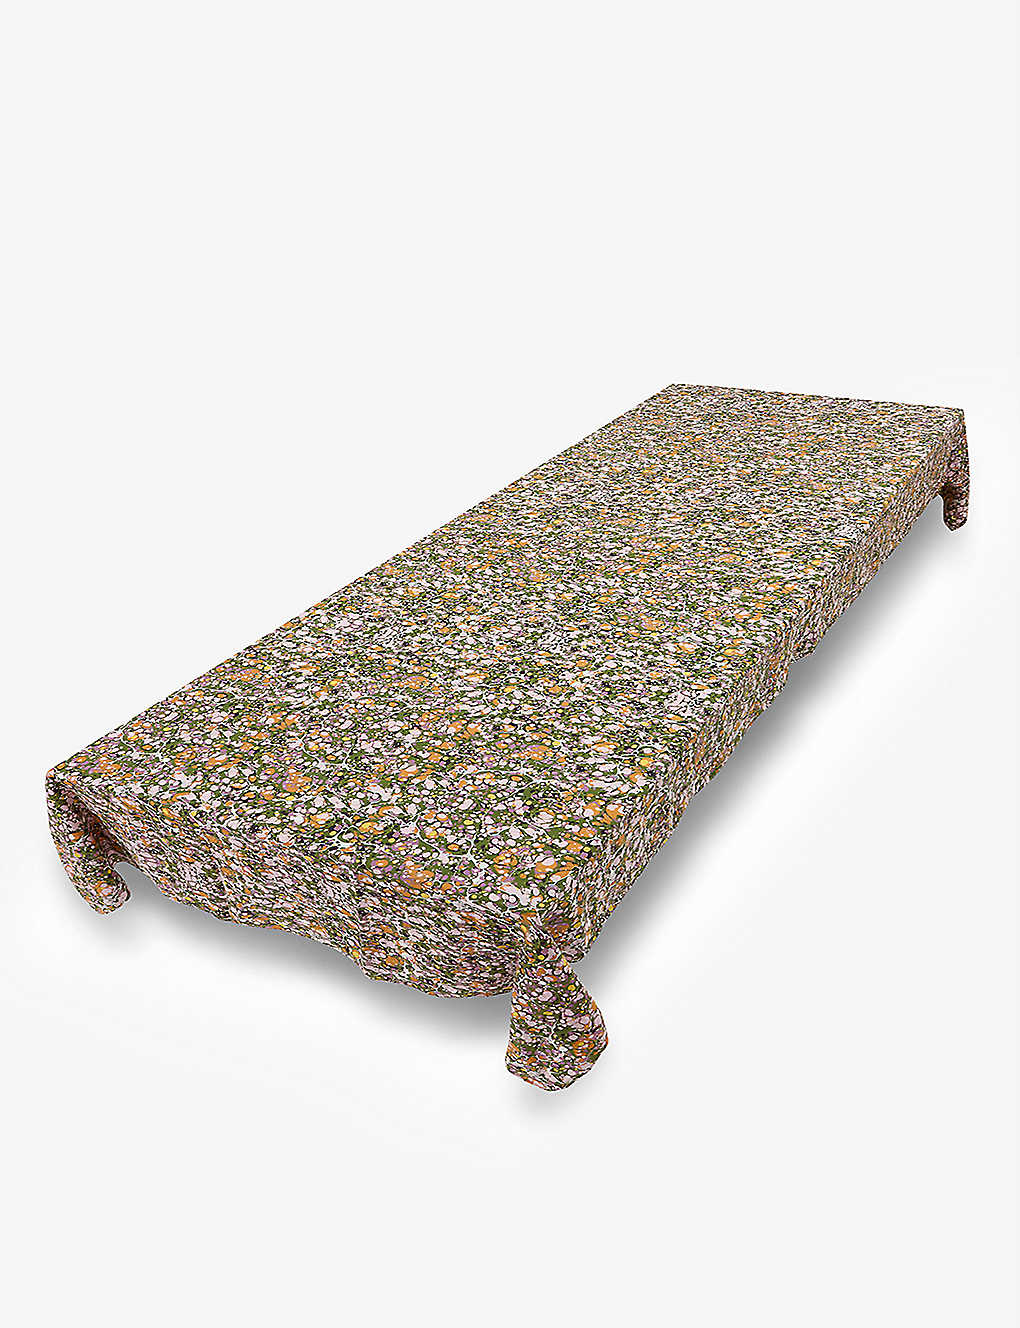 激安通販ショッピング SUMMERILL AND BISHOP マーブルプリント レクタンギュラー リネン テーブル クロス 165cm x250cm  Marble-print rectangular linen table cloth x 300cm